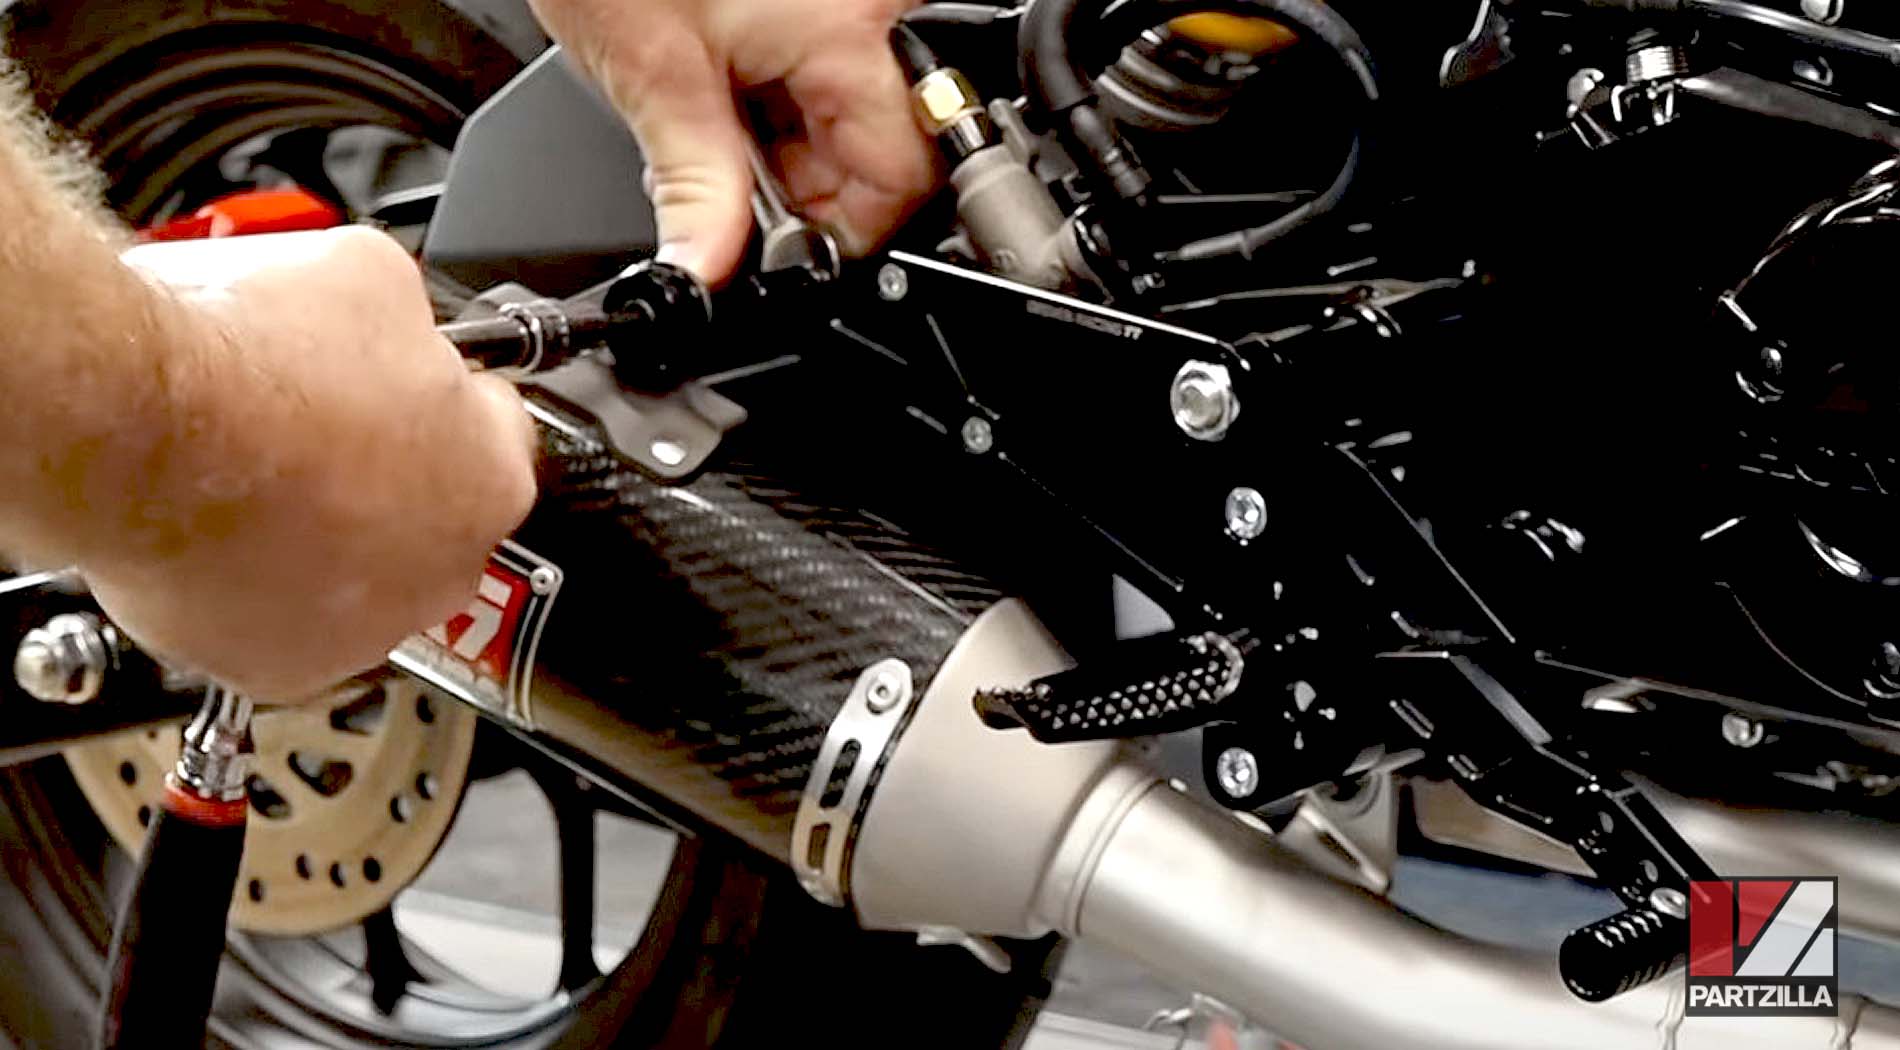 Honda Grom aftermarket suspension upgrades shock absorber